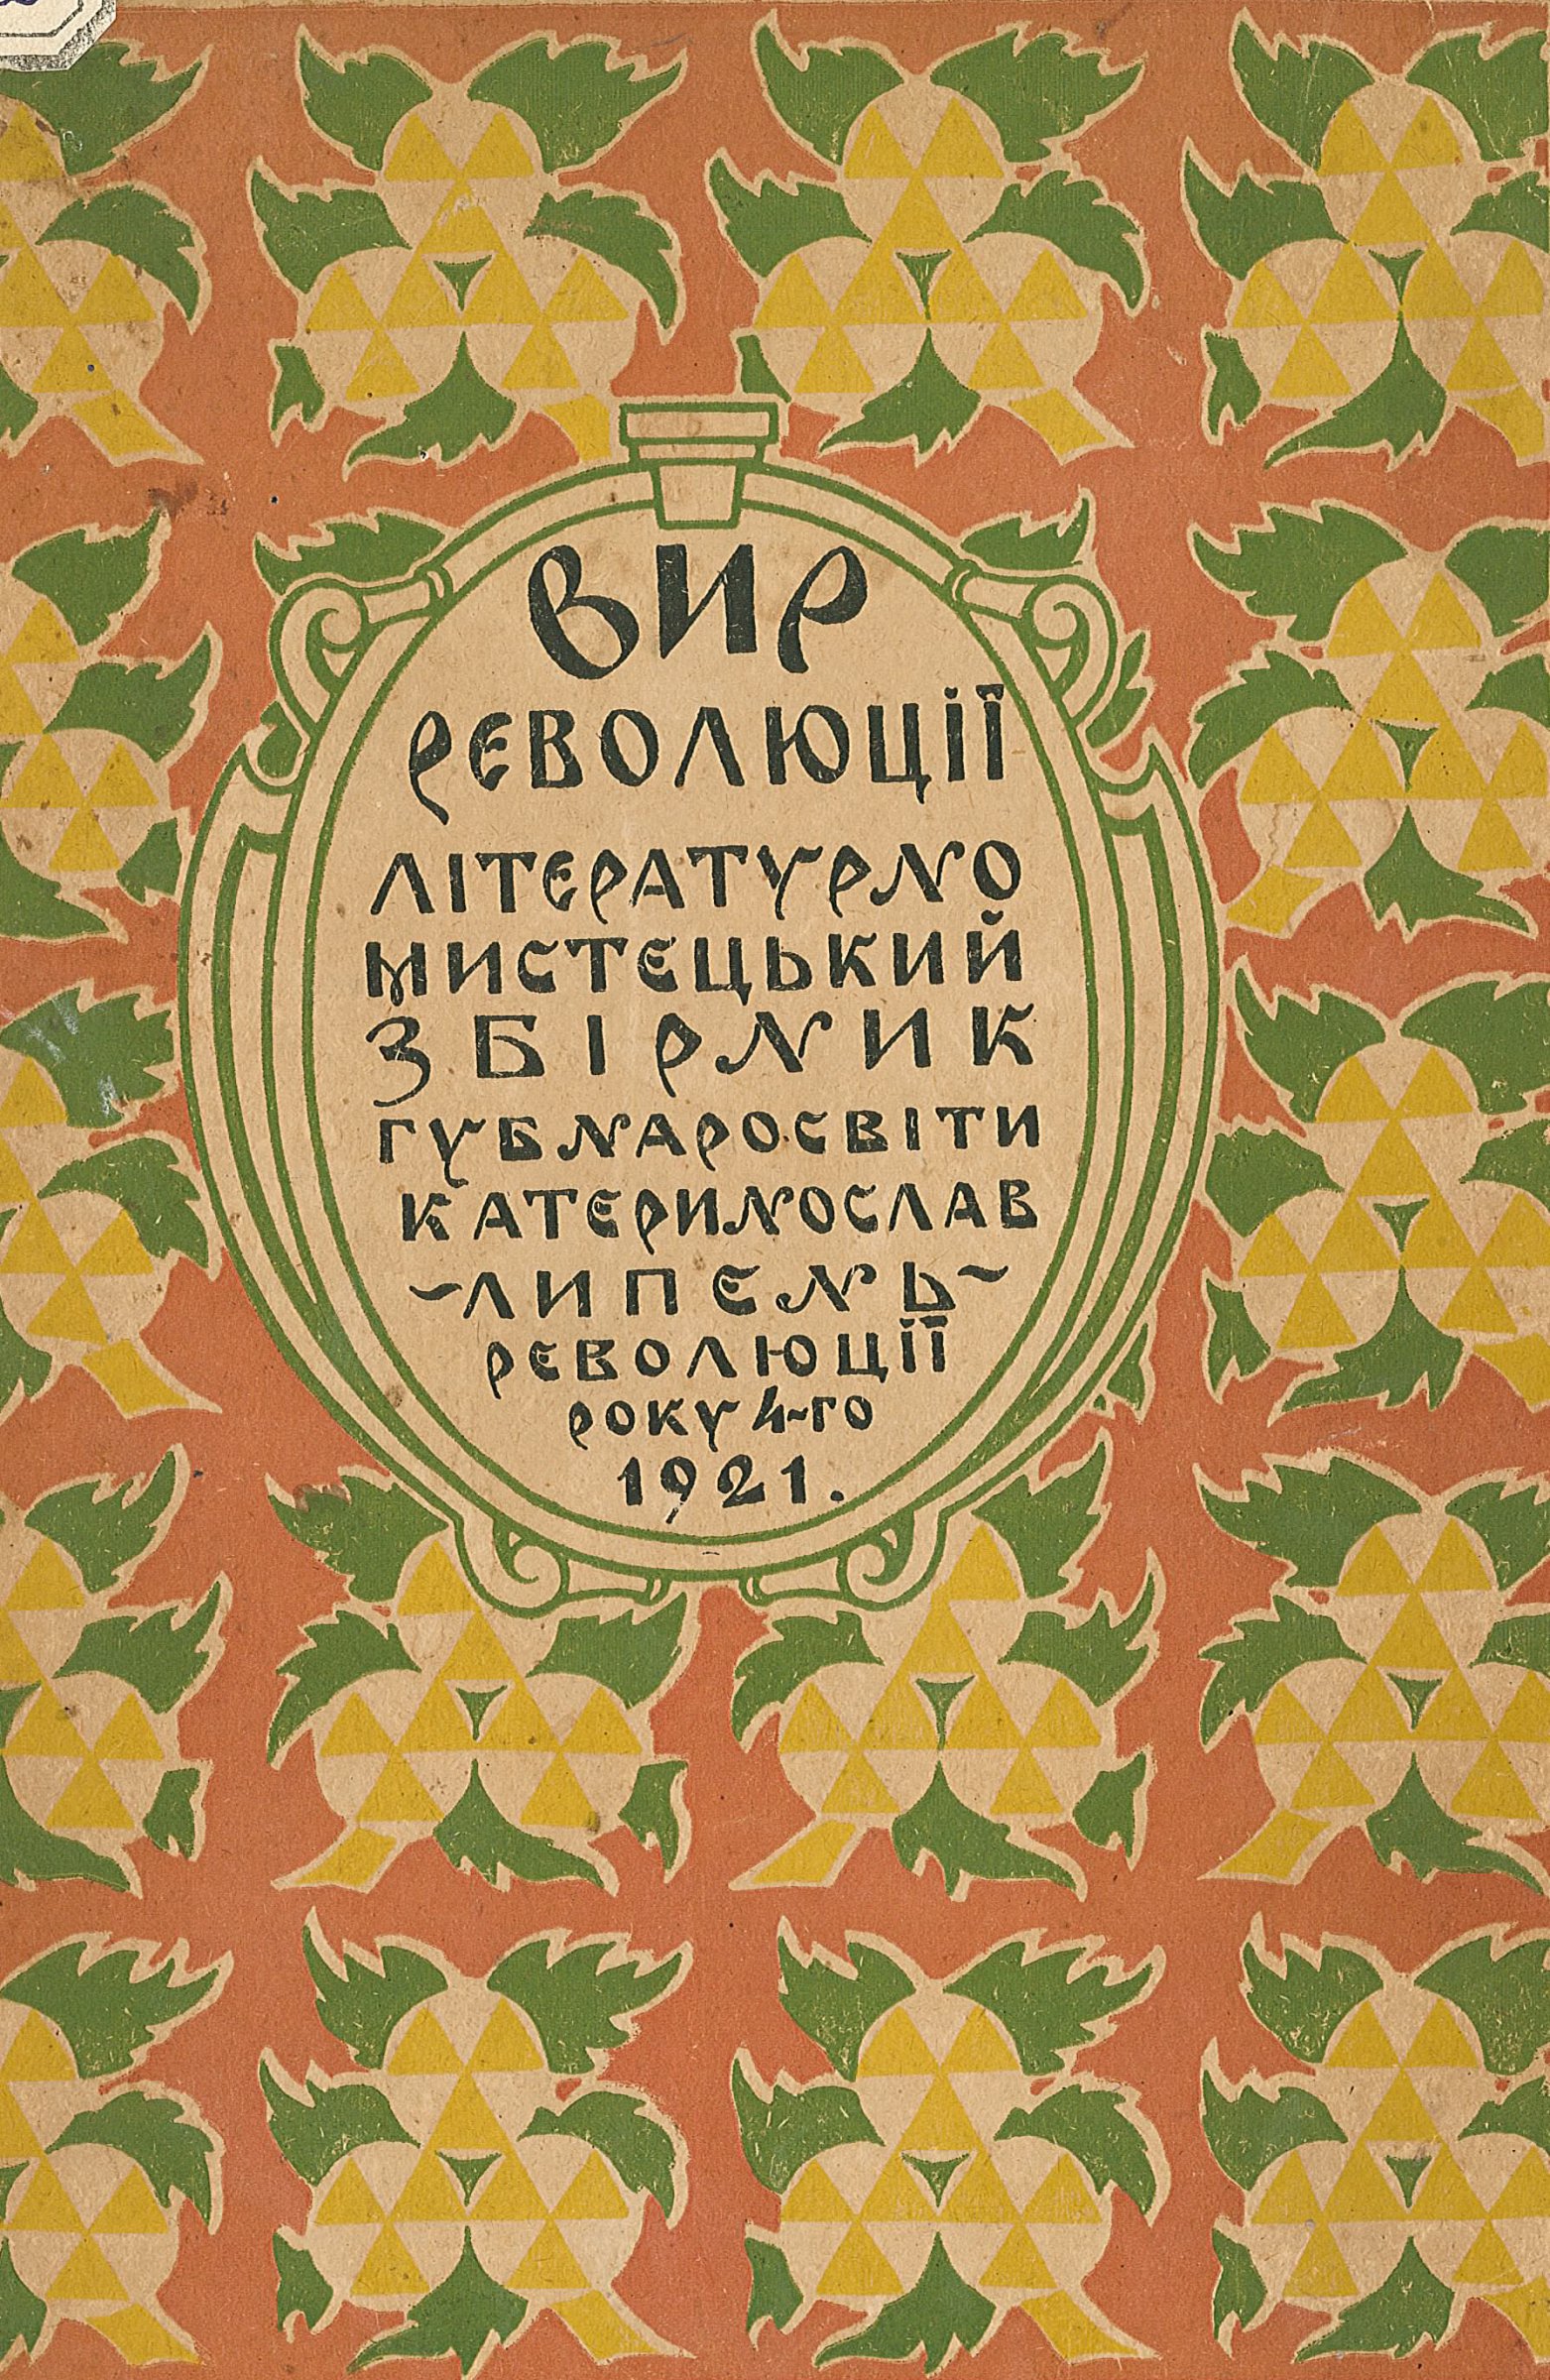 Обкладинка збірки «Вир революції» (1921), в якому друкувався В. Атаманюк